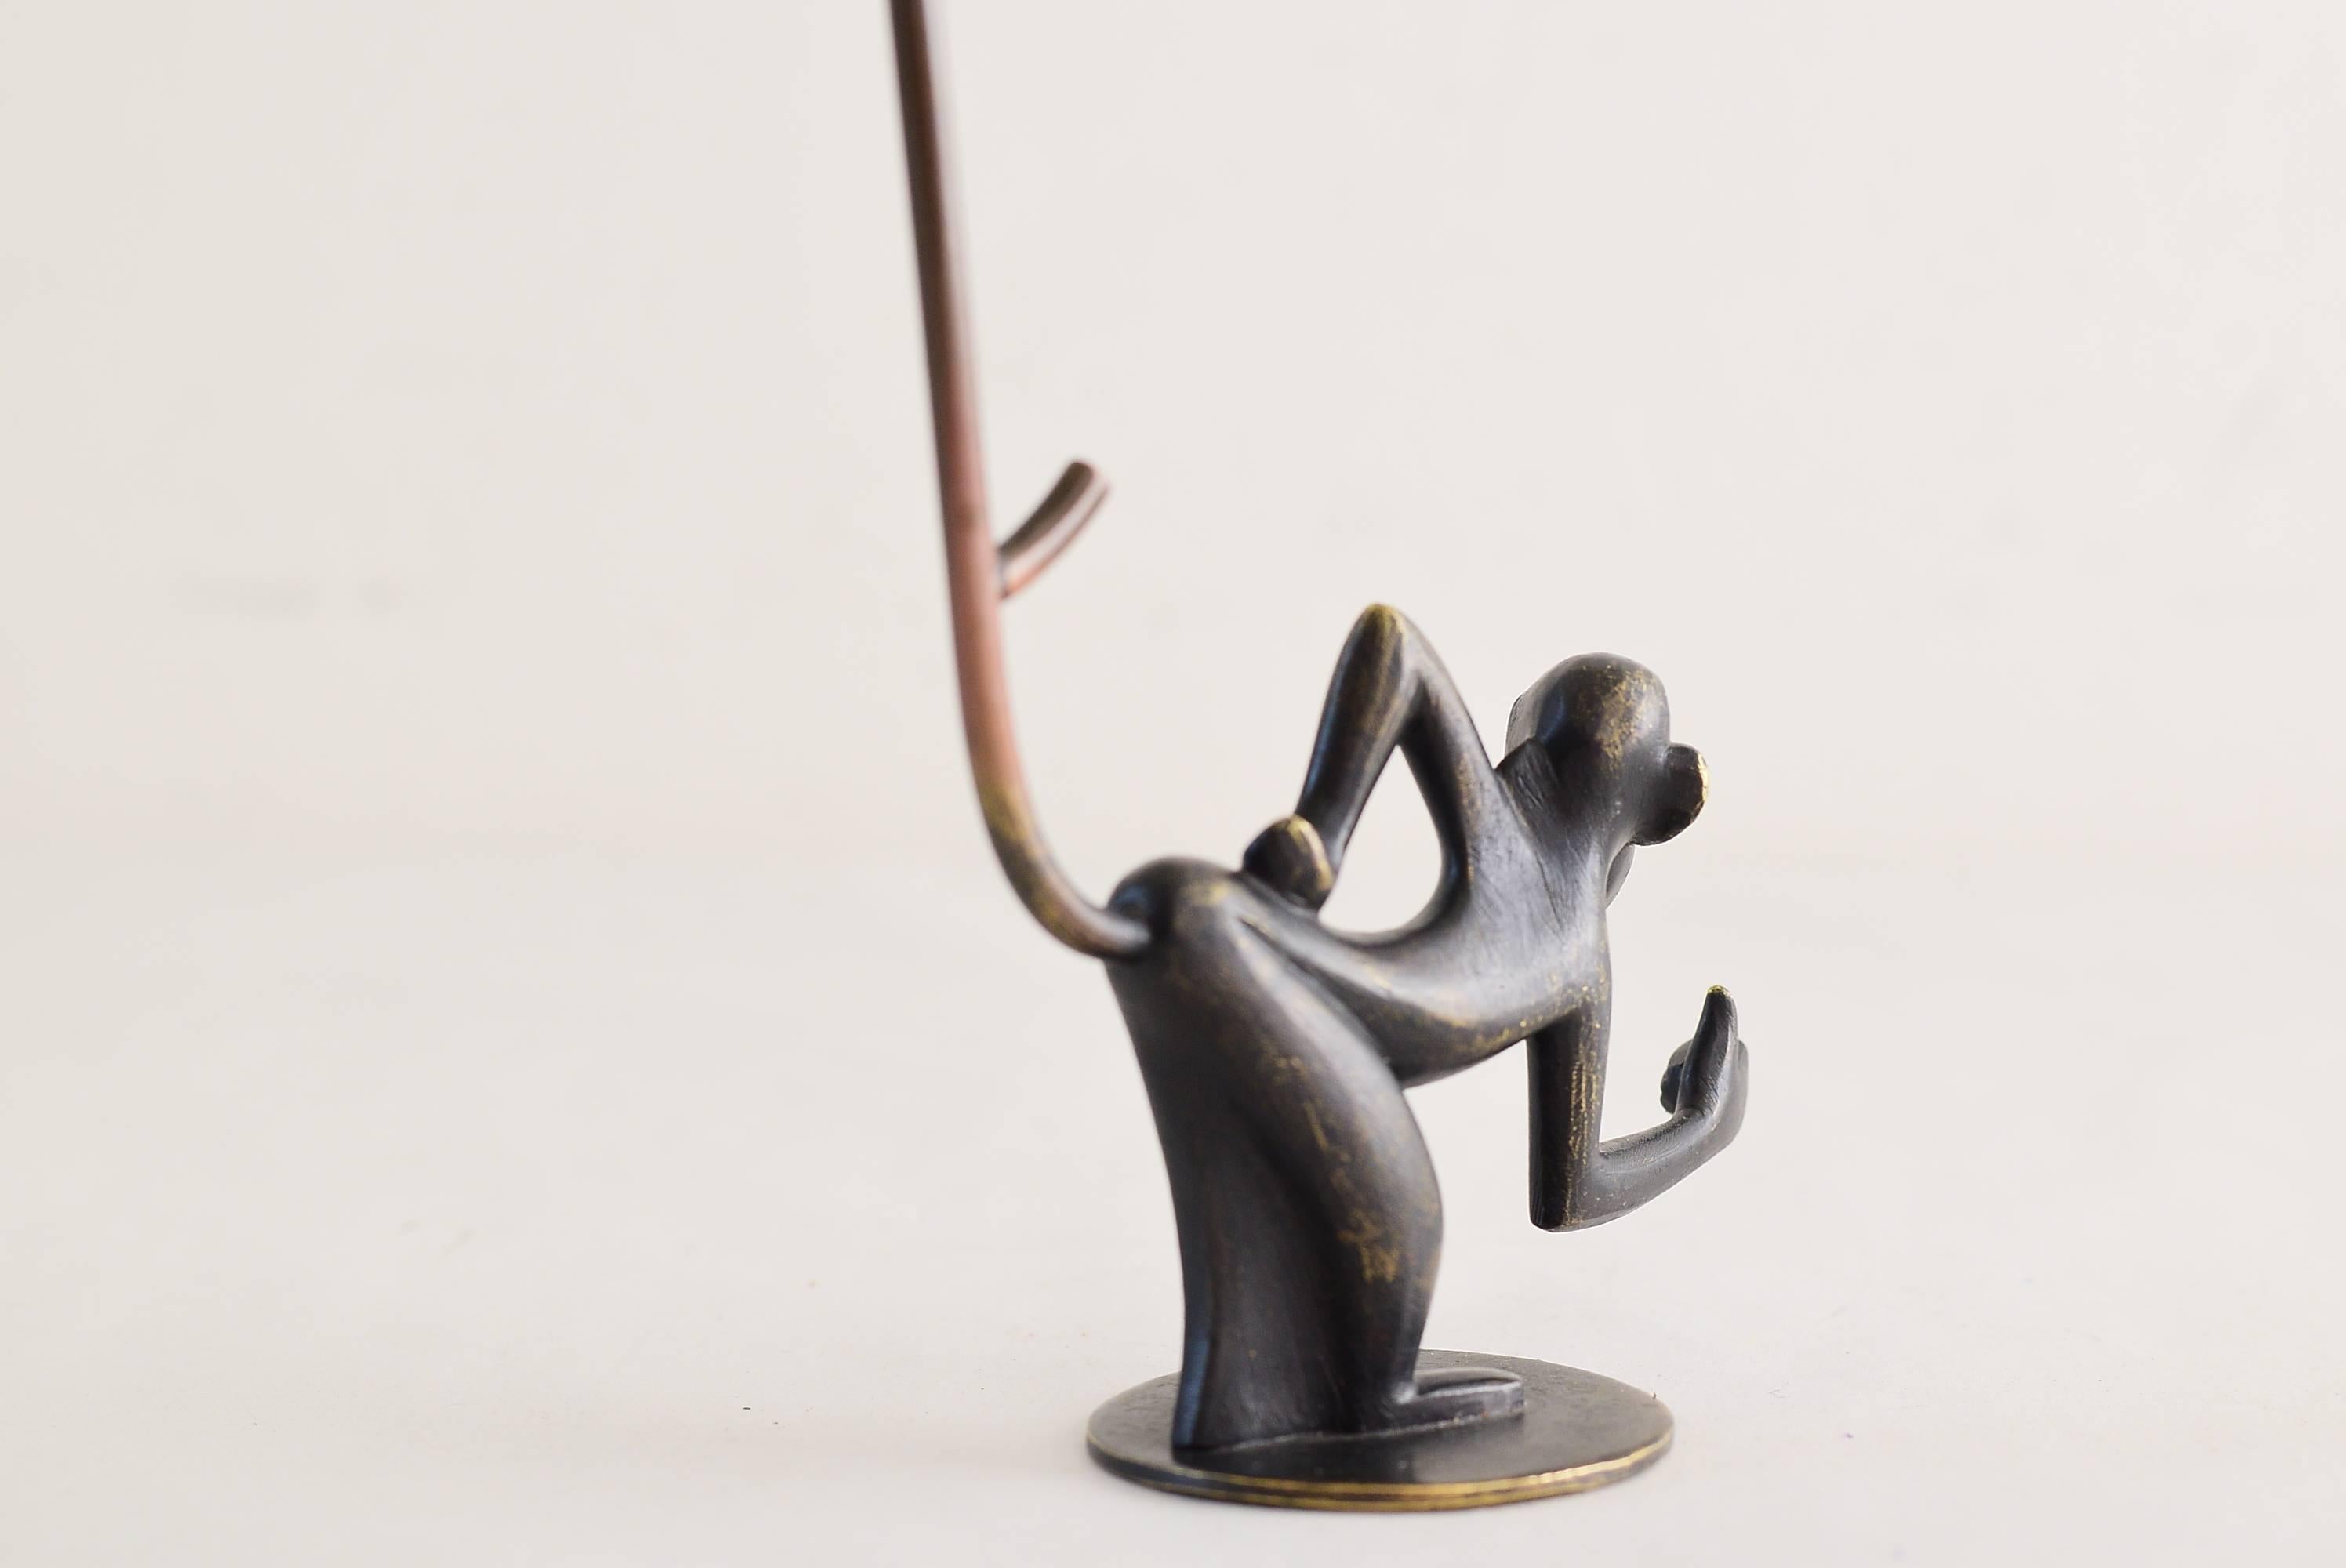 Austrian Brass Monkey Figurine Pretzel Holder, Ring Holder by Richard Rohac